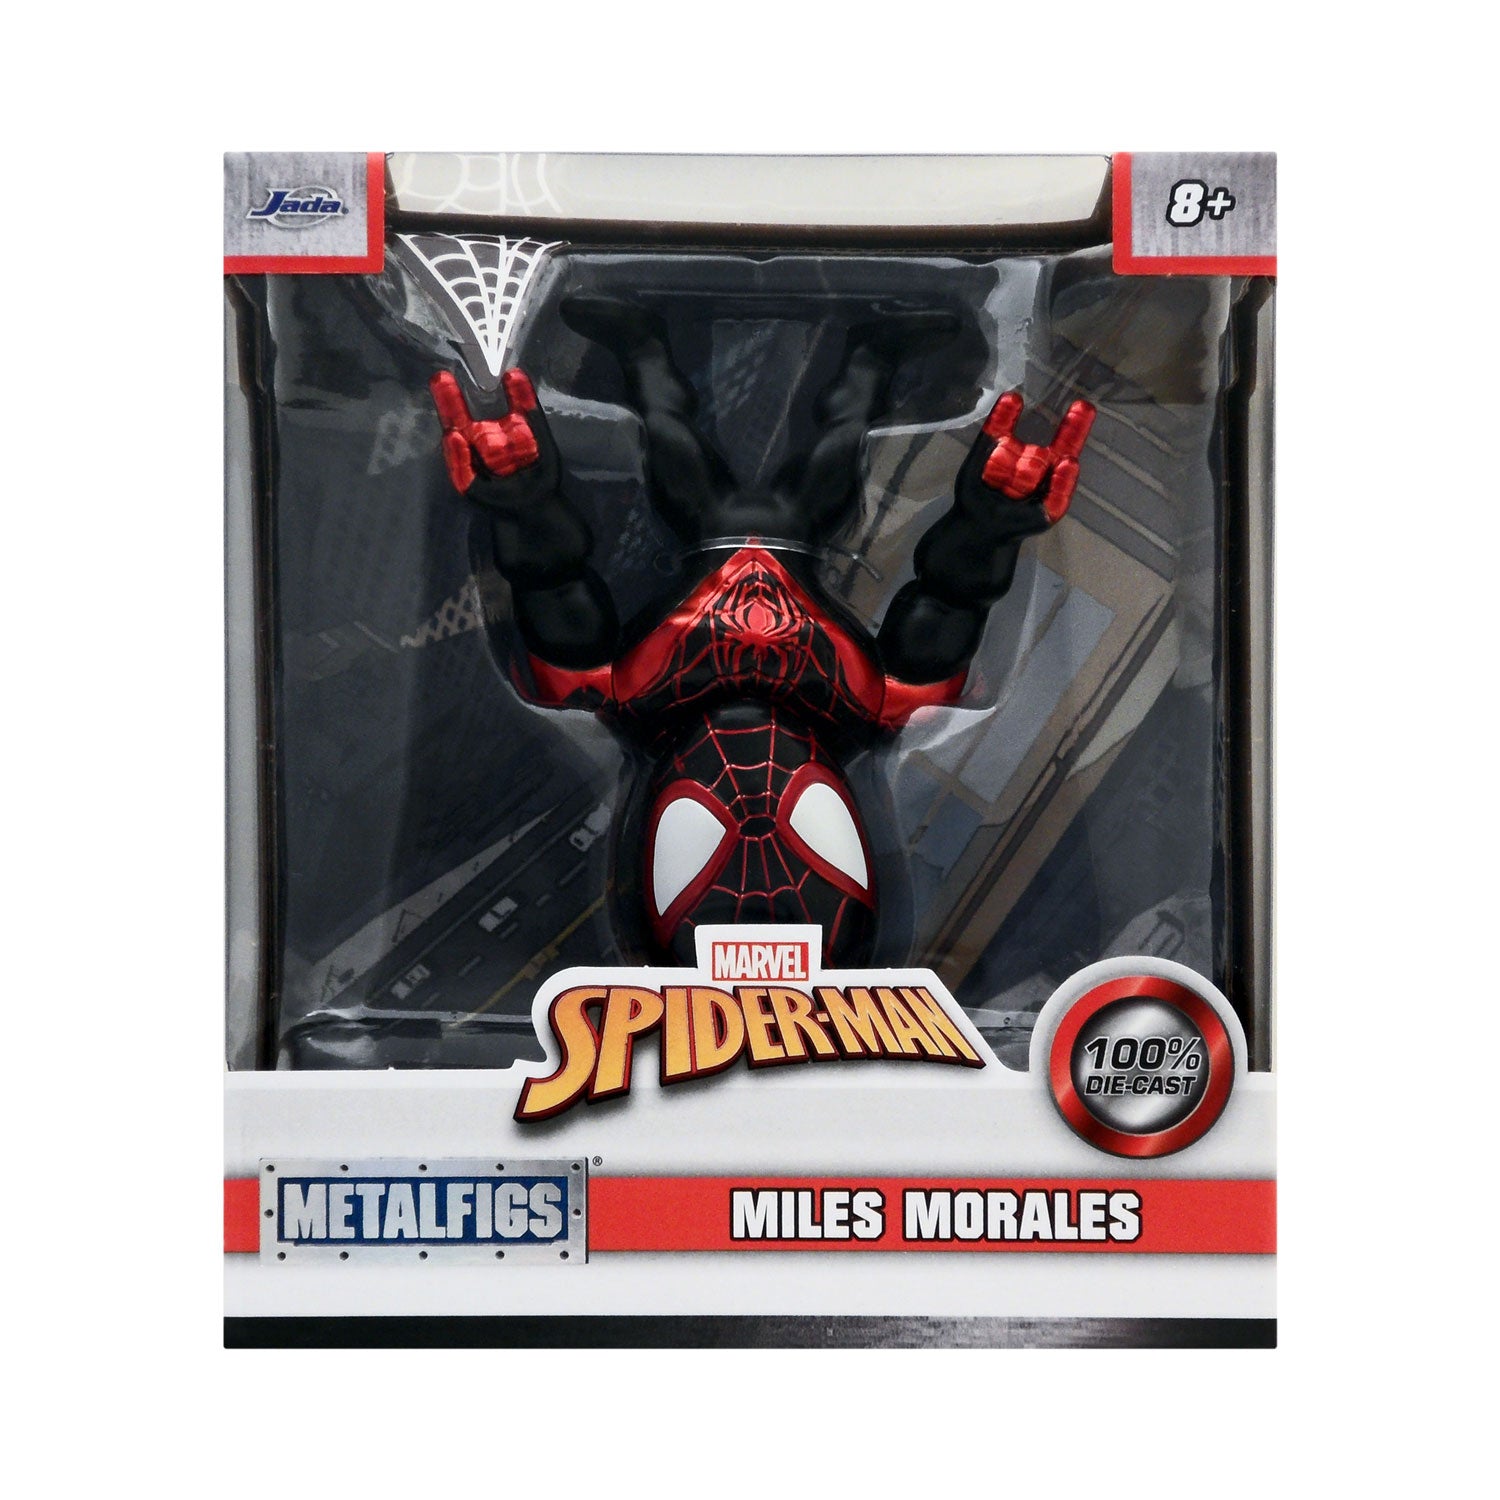  Jada Toys Metals Marvel 4 Classic Figure - Morales